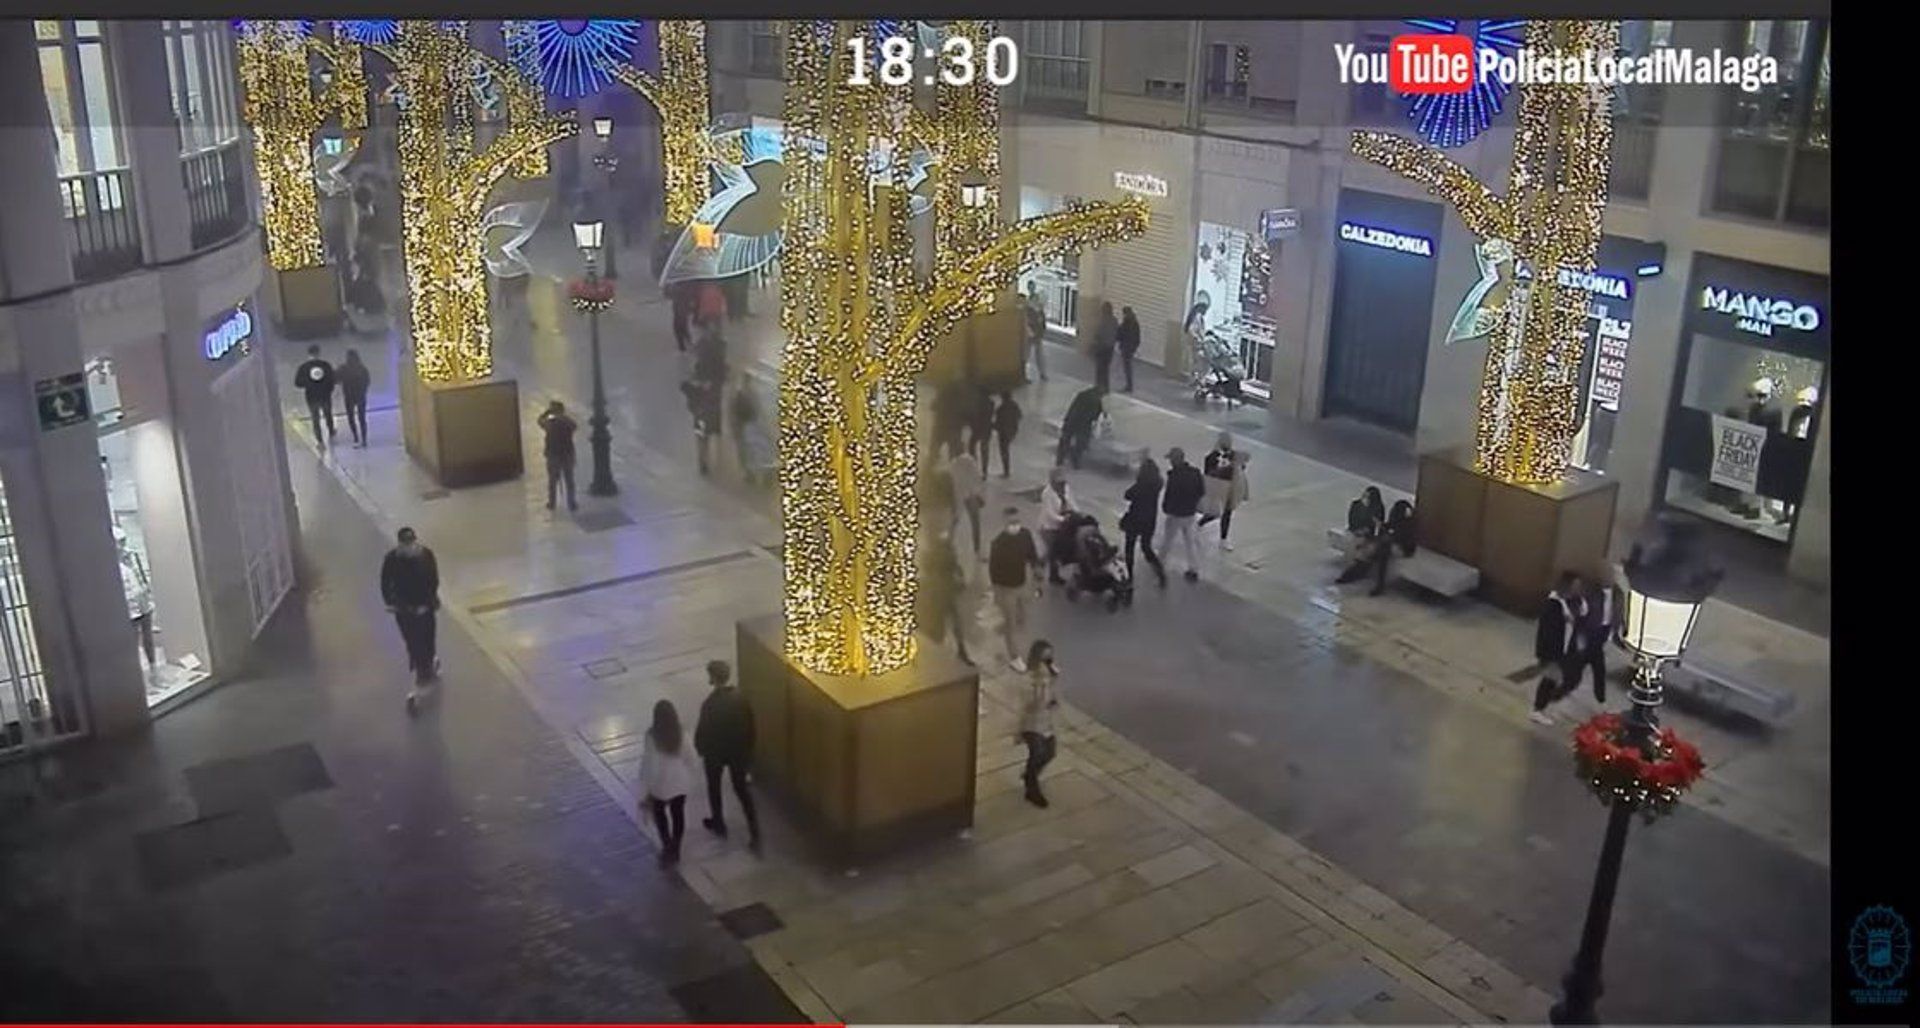 Imágenes de la calle Larios de Málaga a las 18:30 horas del pasado 27 de noviembre, cuando ya estaba encendido el alumbrado navideño de 2020. Autor: Policía de Málaga